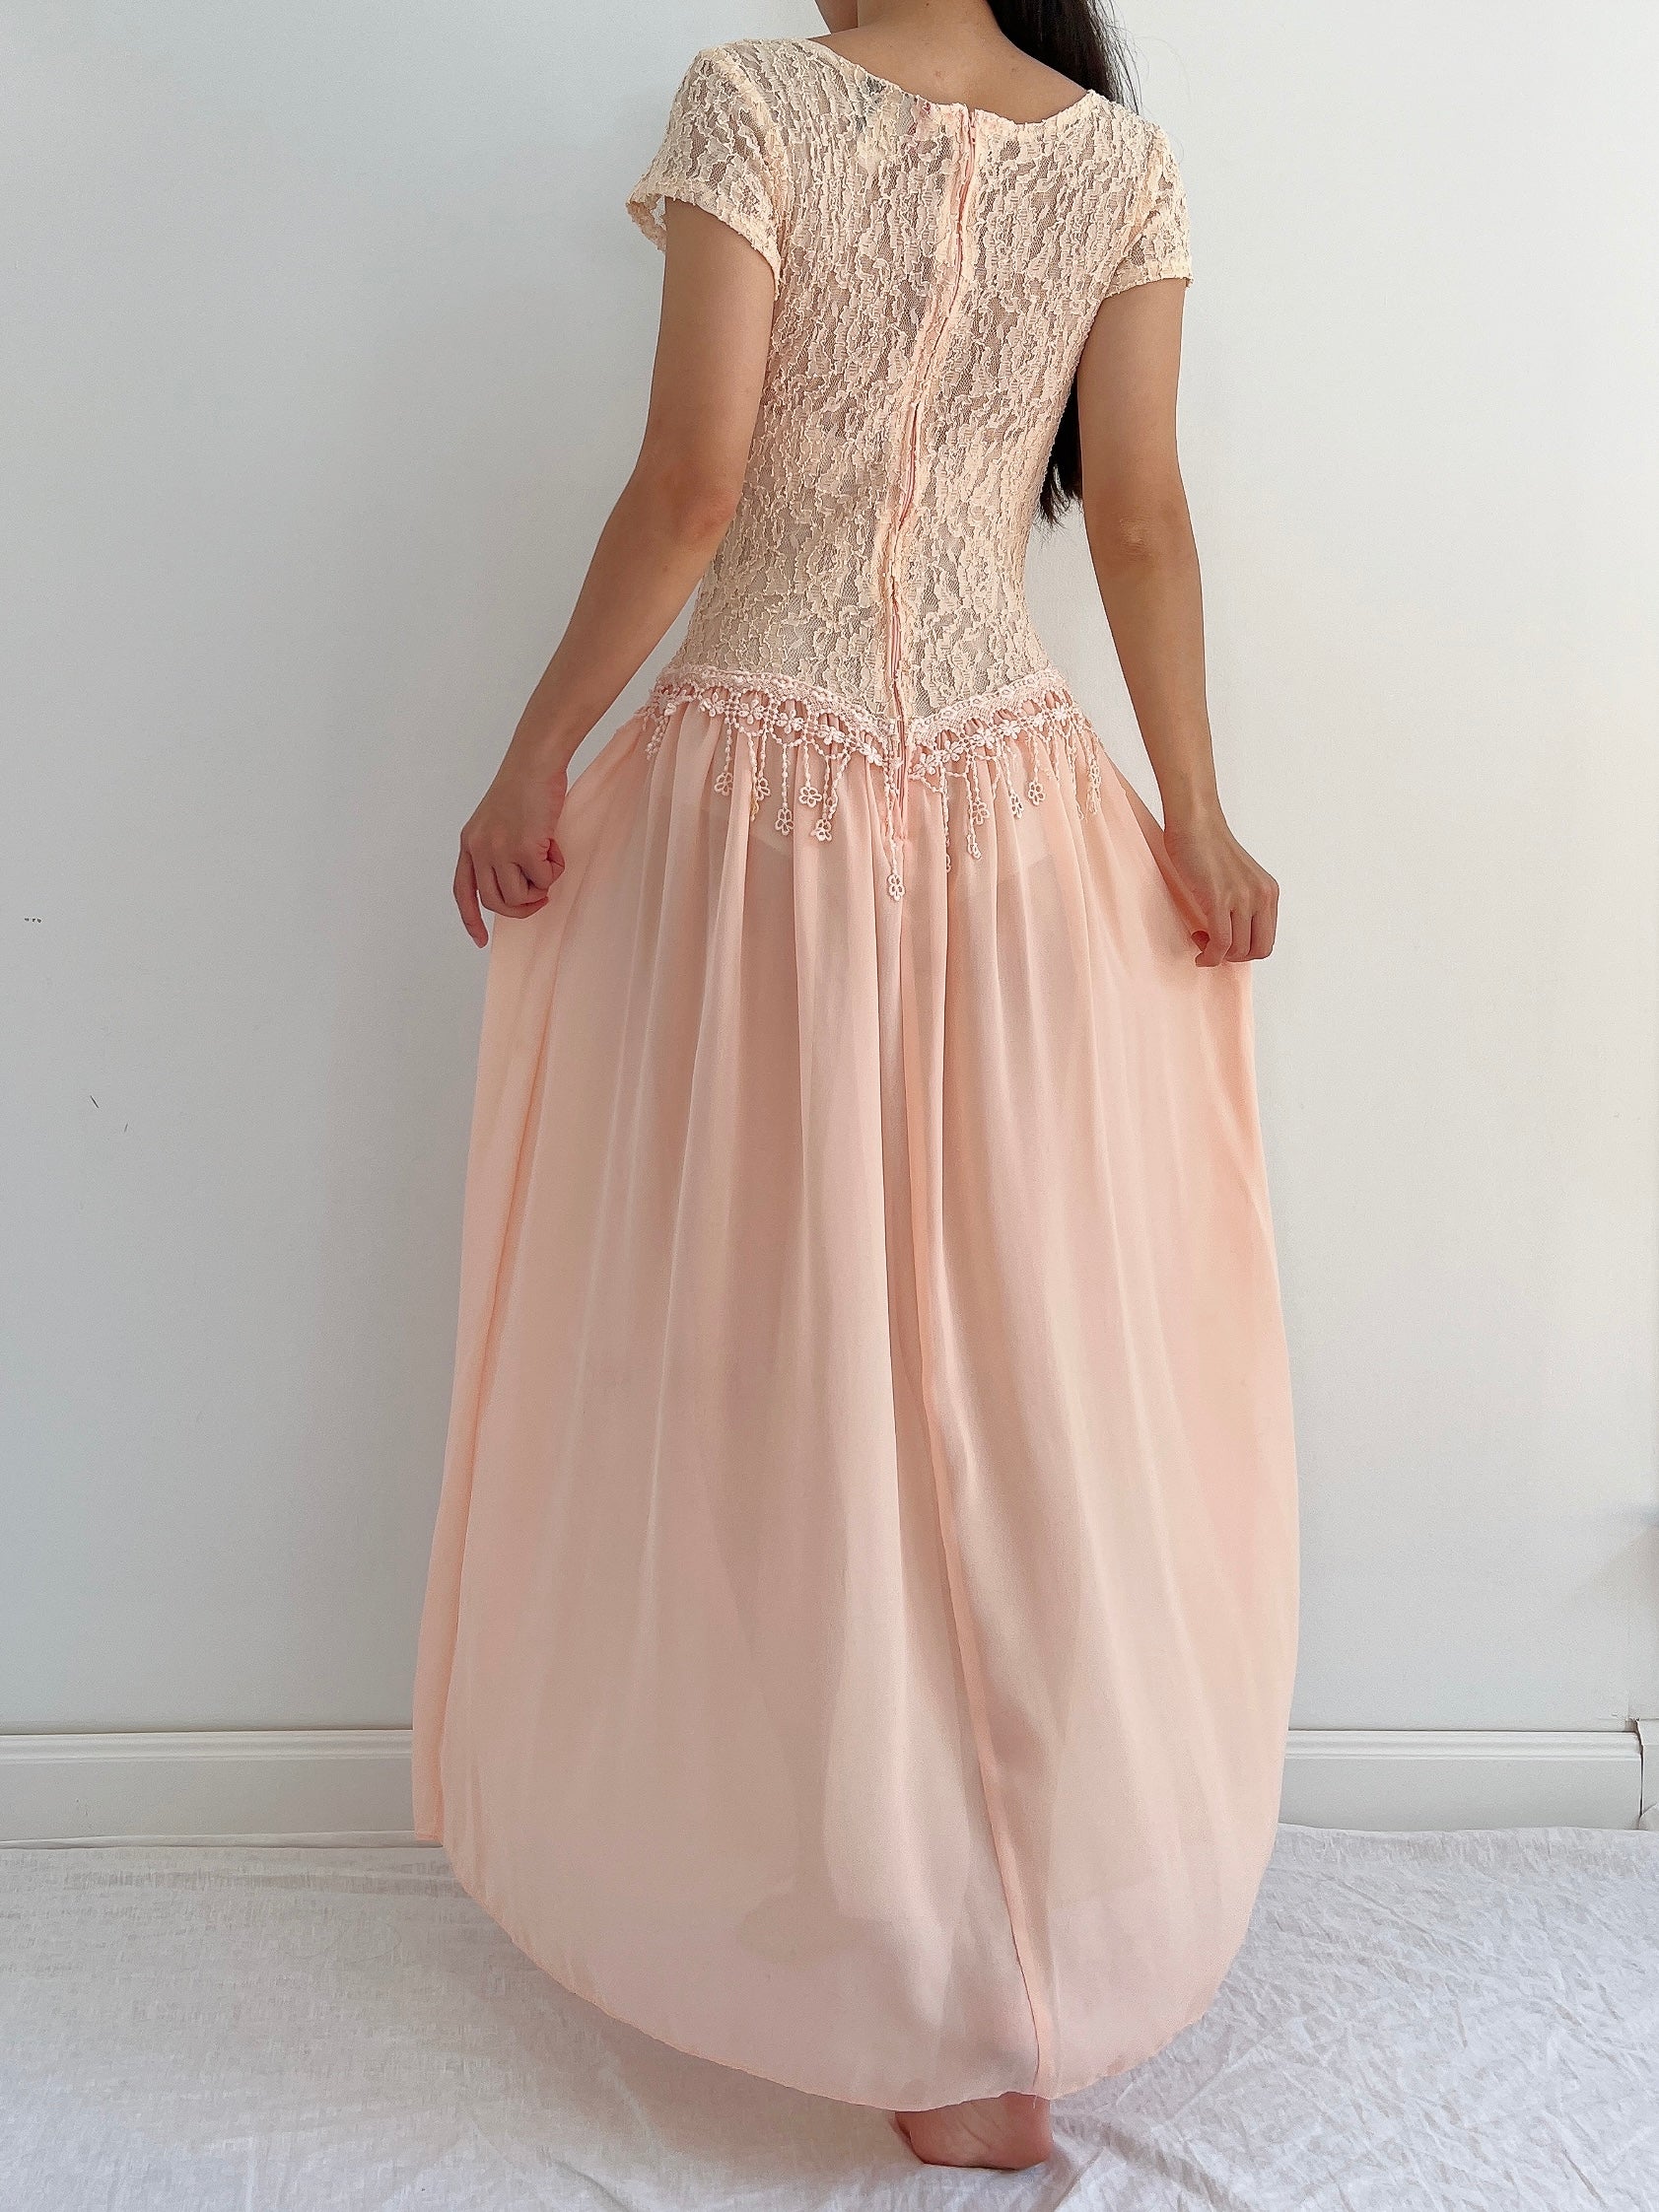 Vintage Lace and Chiffon Dress - S